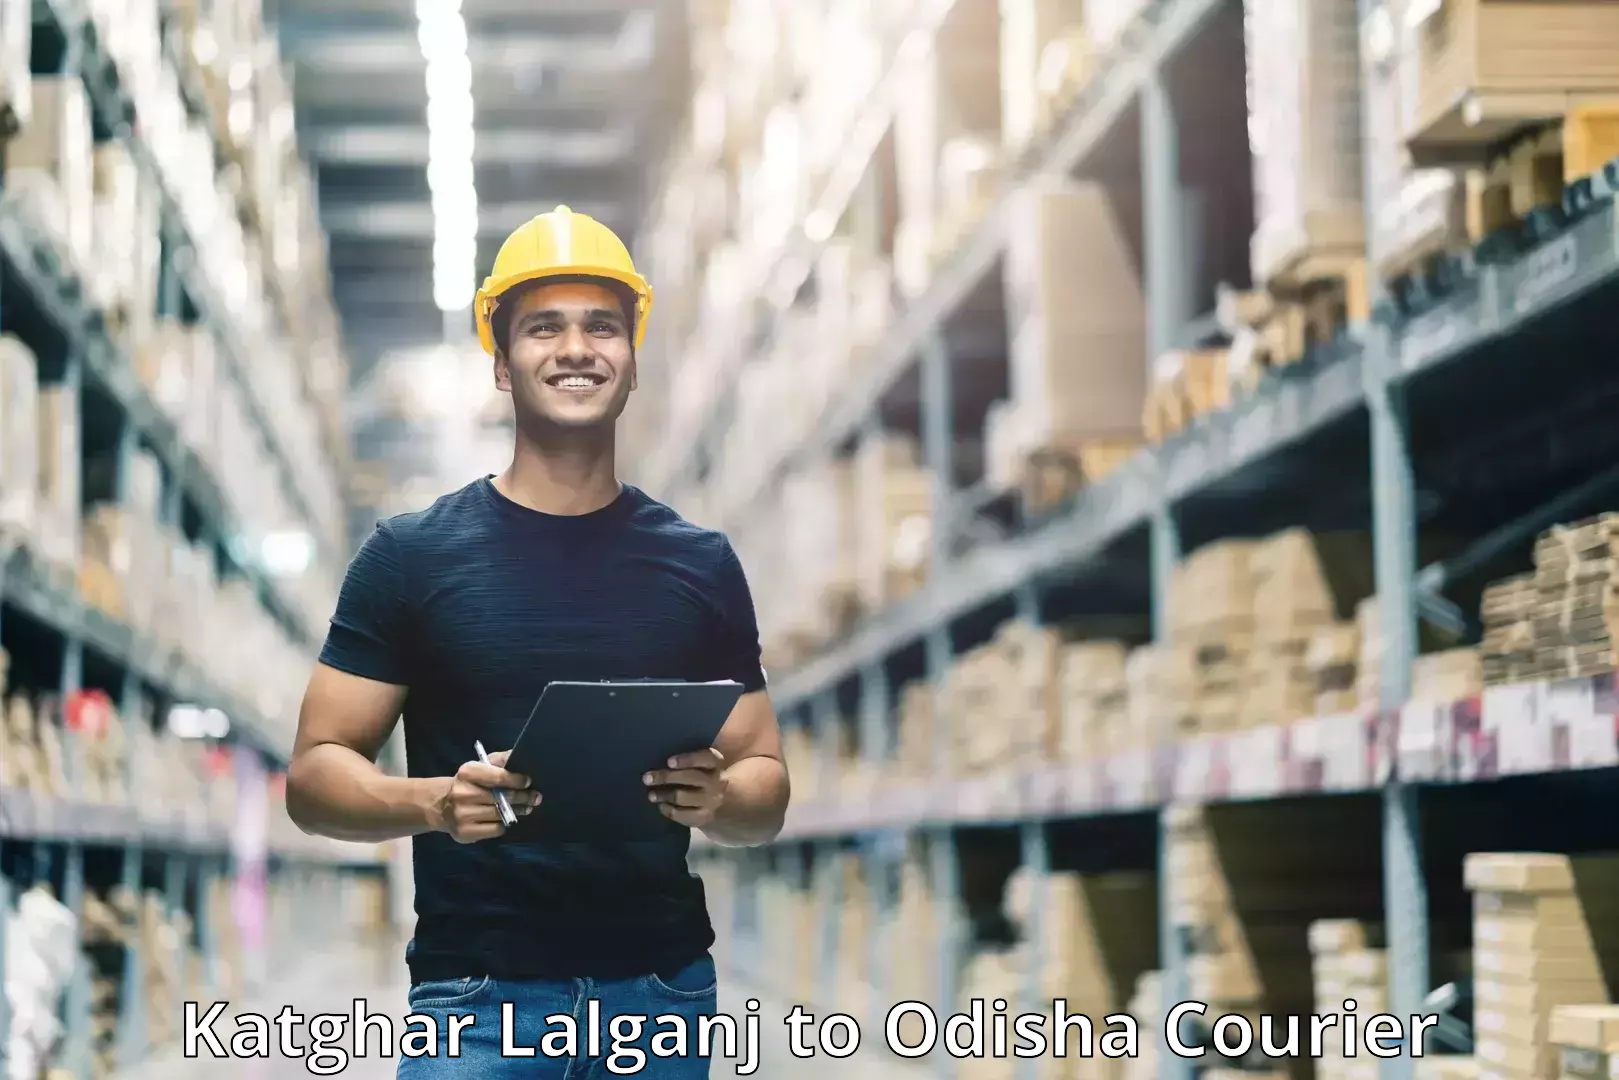 Online package tracking Katghar Lalganj to Dhamanagar